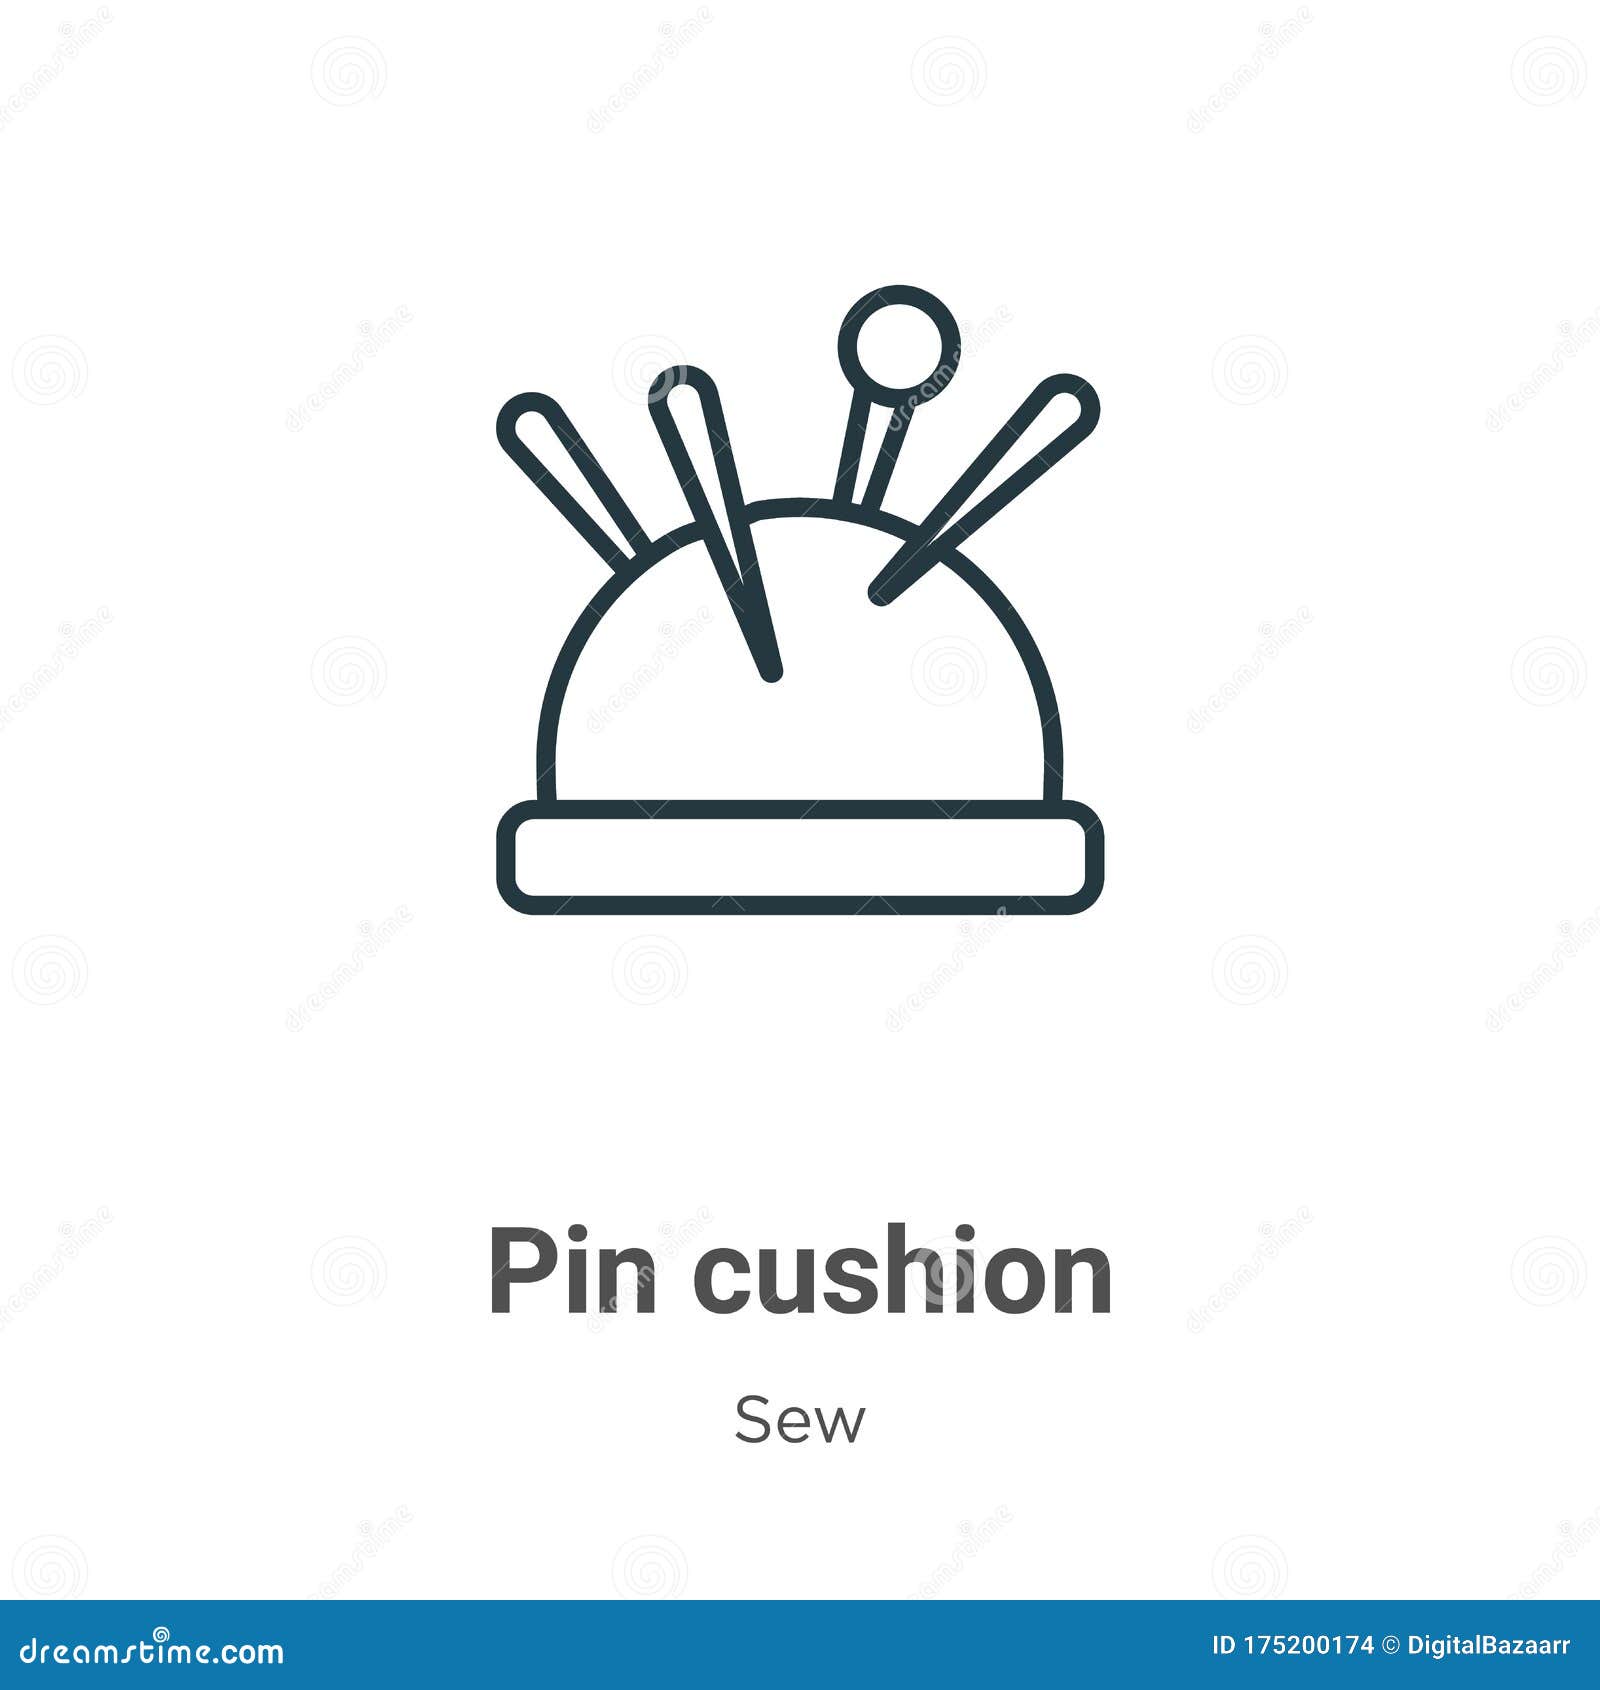 Sewing pin cushion flat Royalty Free Vector Image